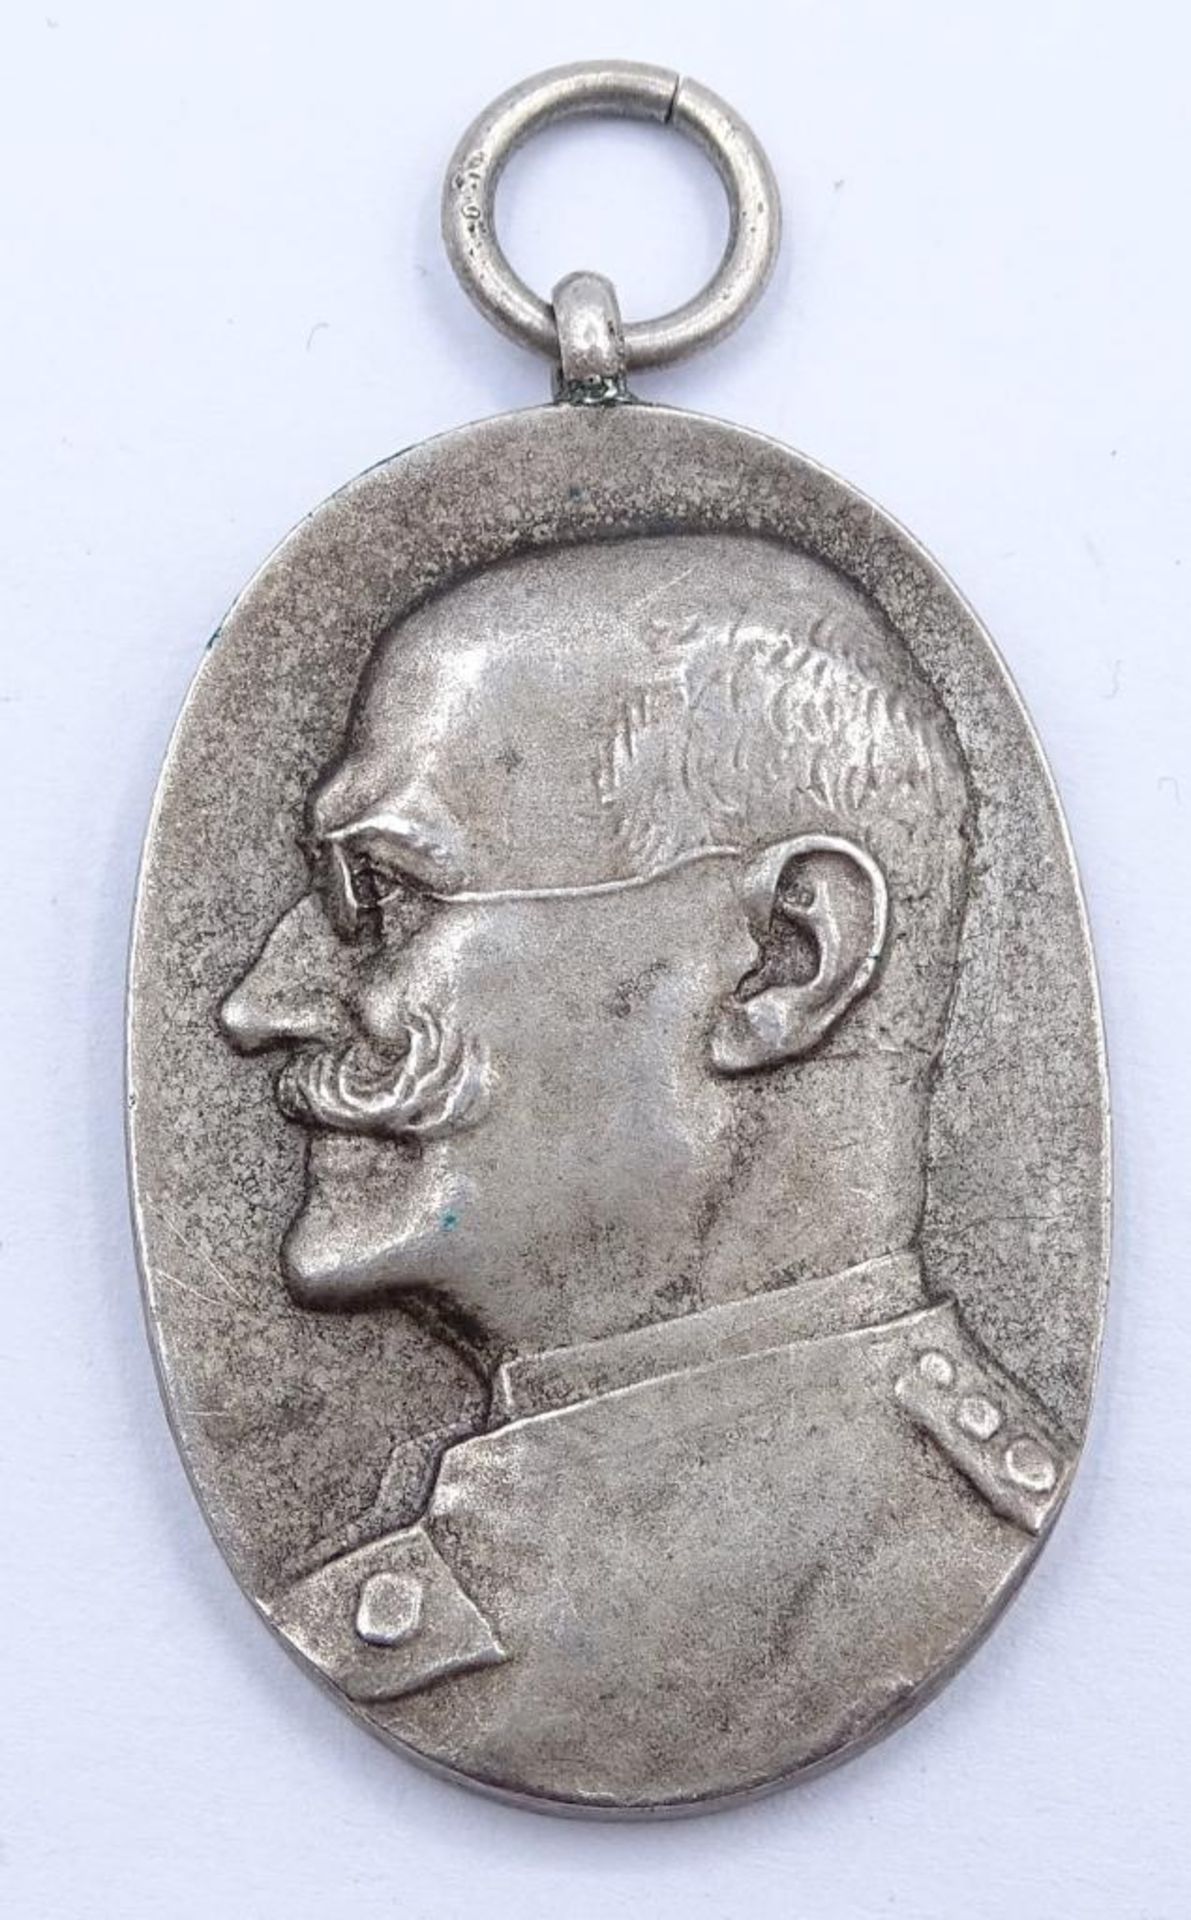 Medaille Prinz Alfons v. Bayern, gewidmet für das 25jährige Jubiläum als Protektor der Bundesschütz